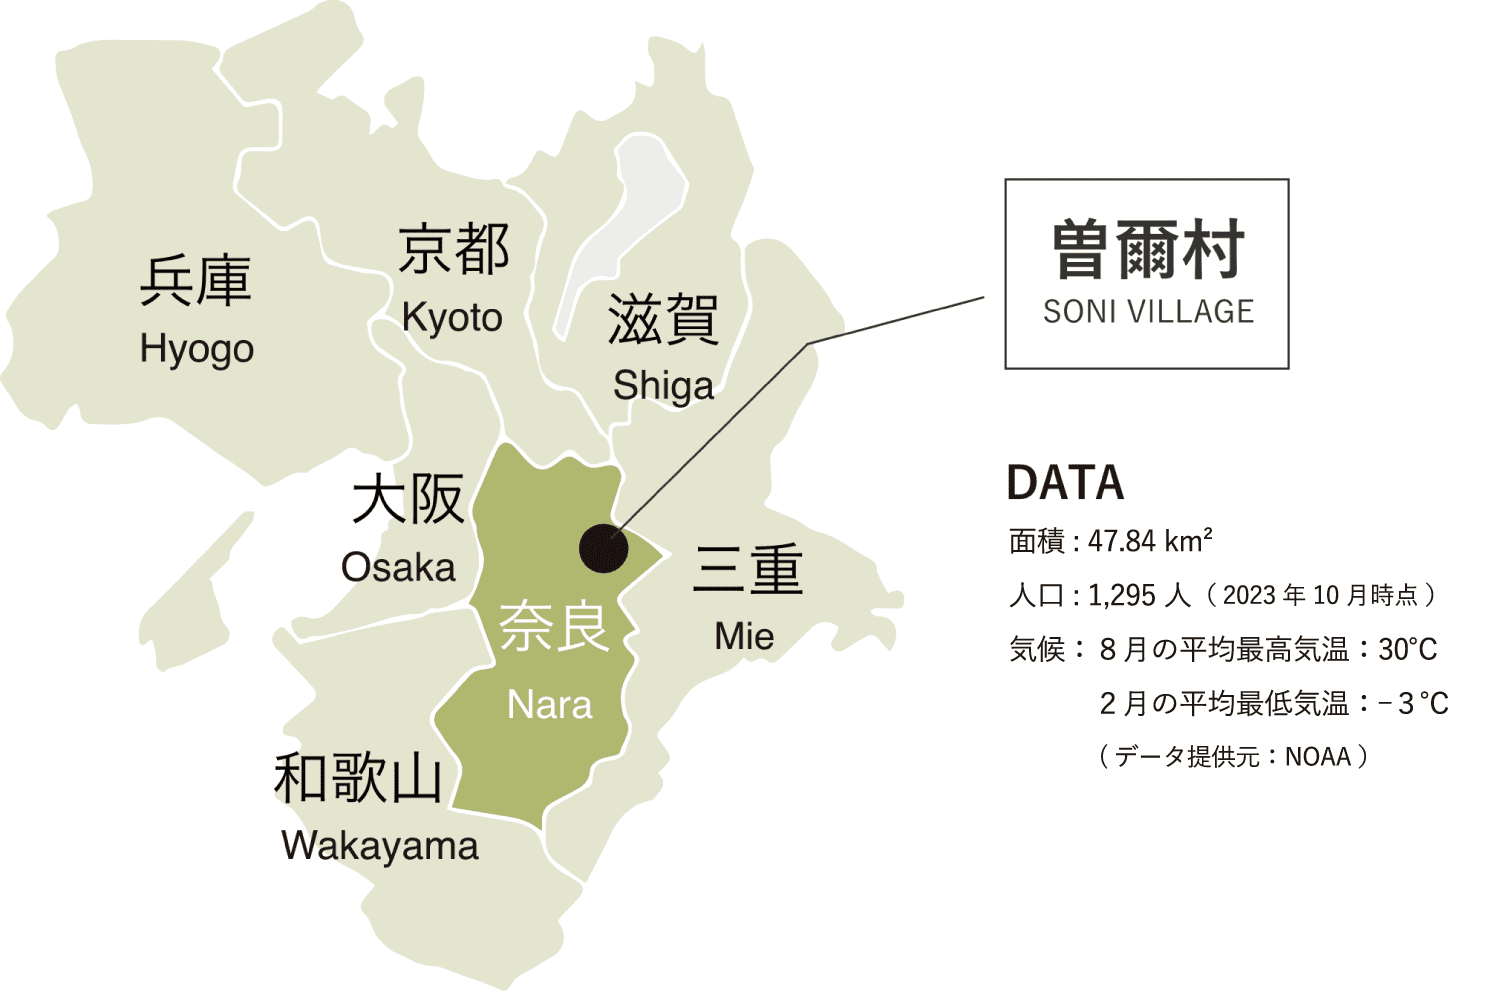 曽爾村についてのデータ画像